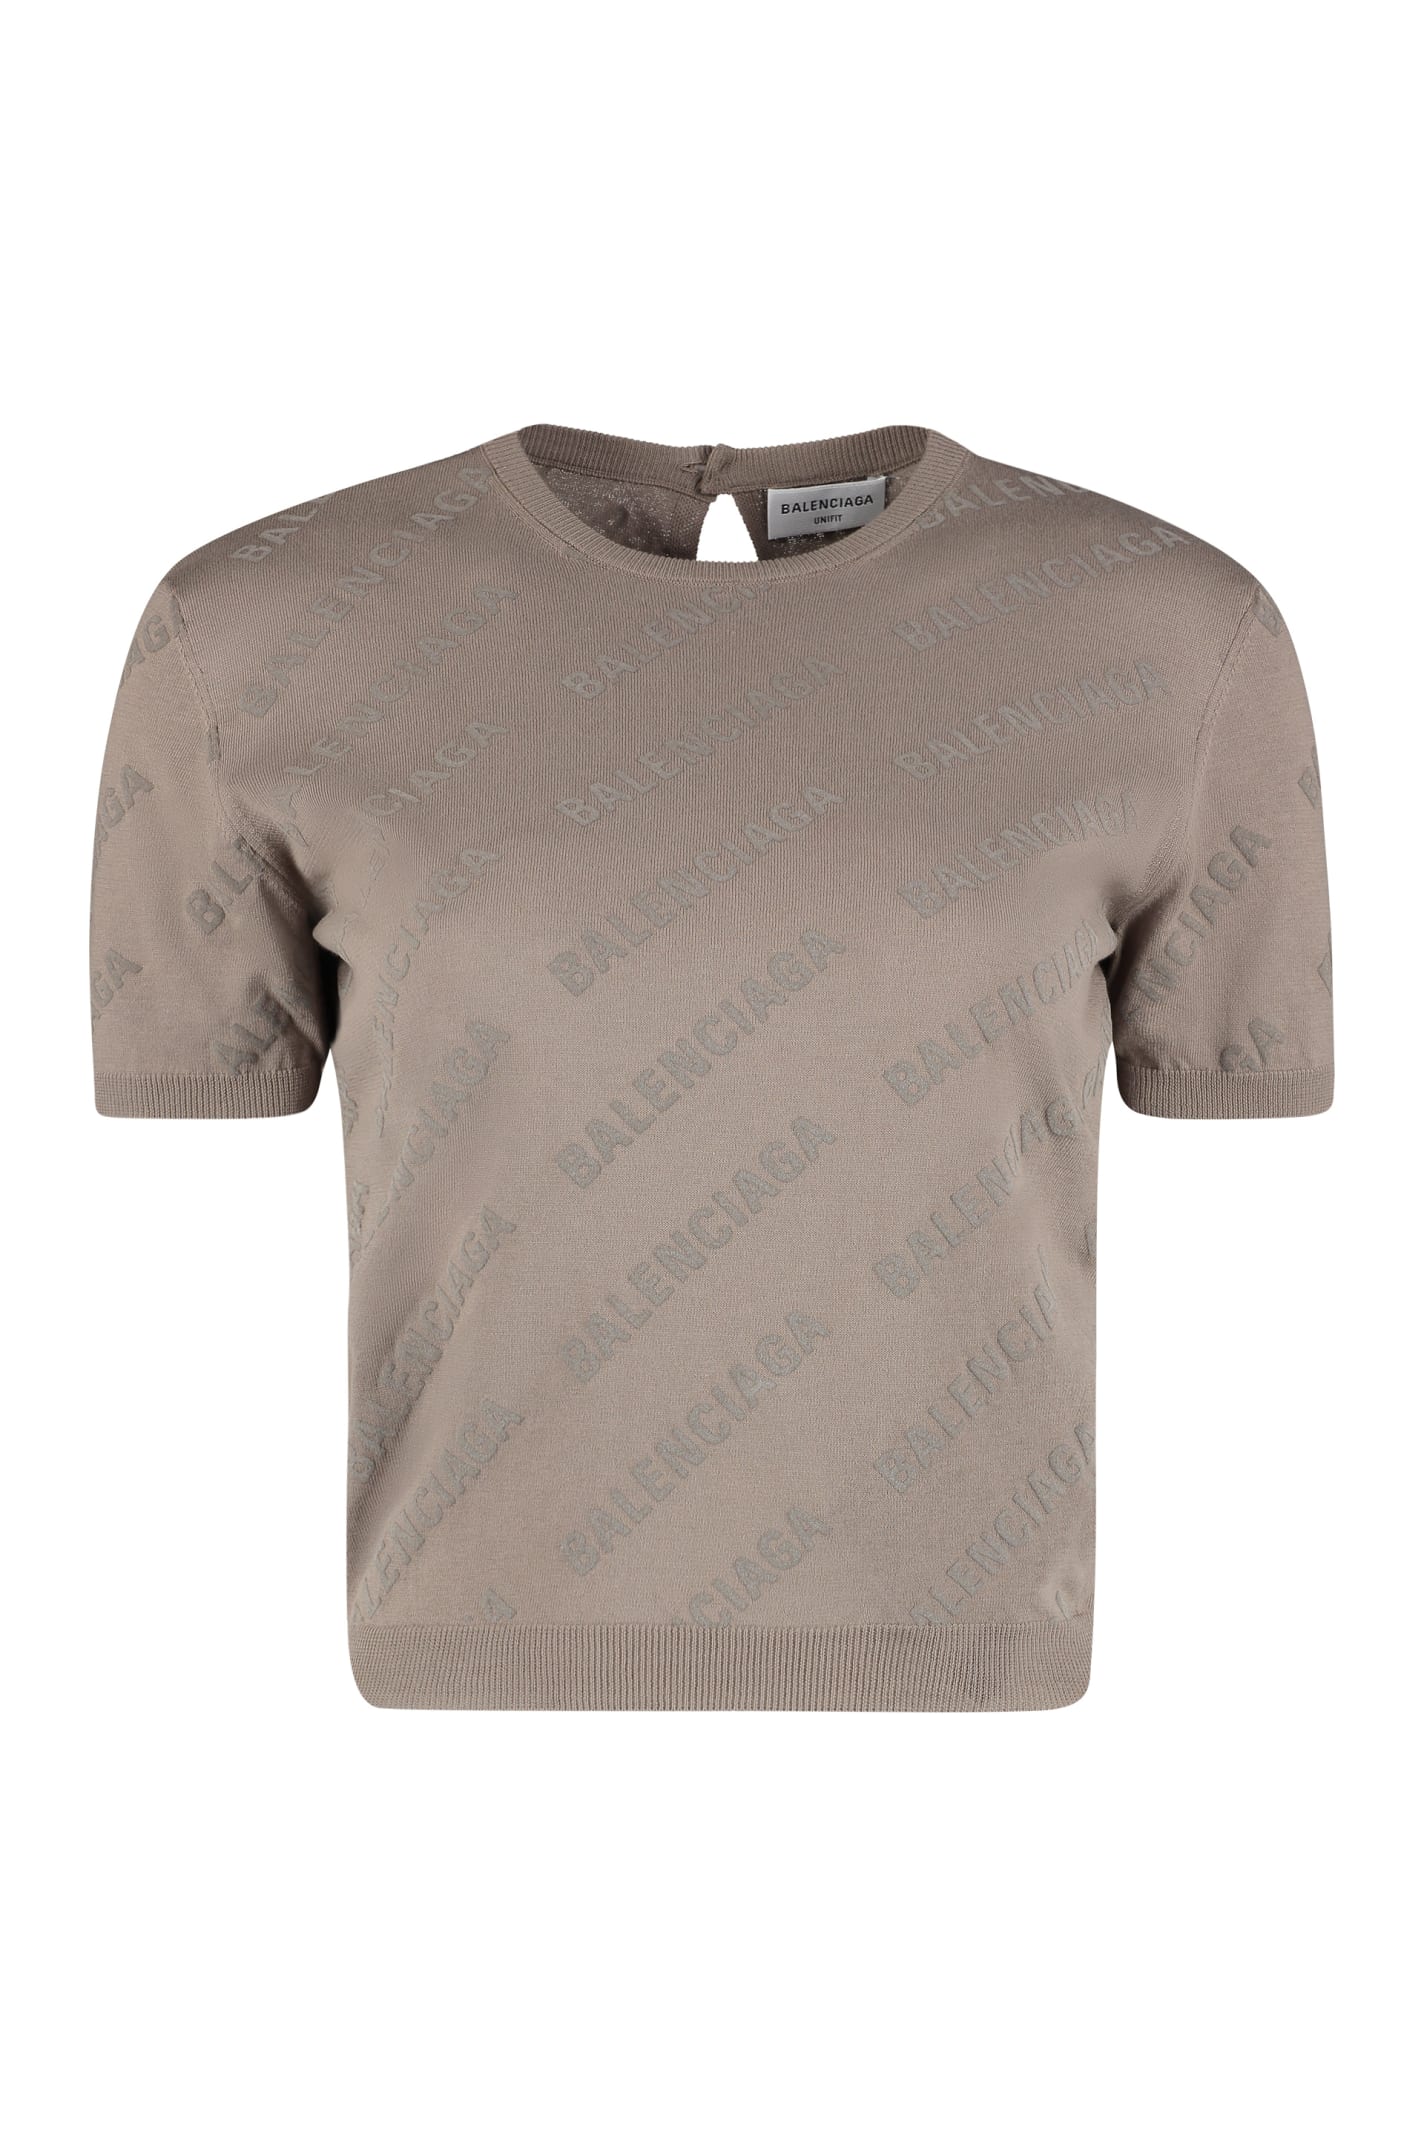 Balenciaga Cotton Crew-neck T-shirt